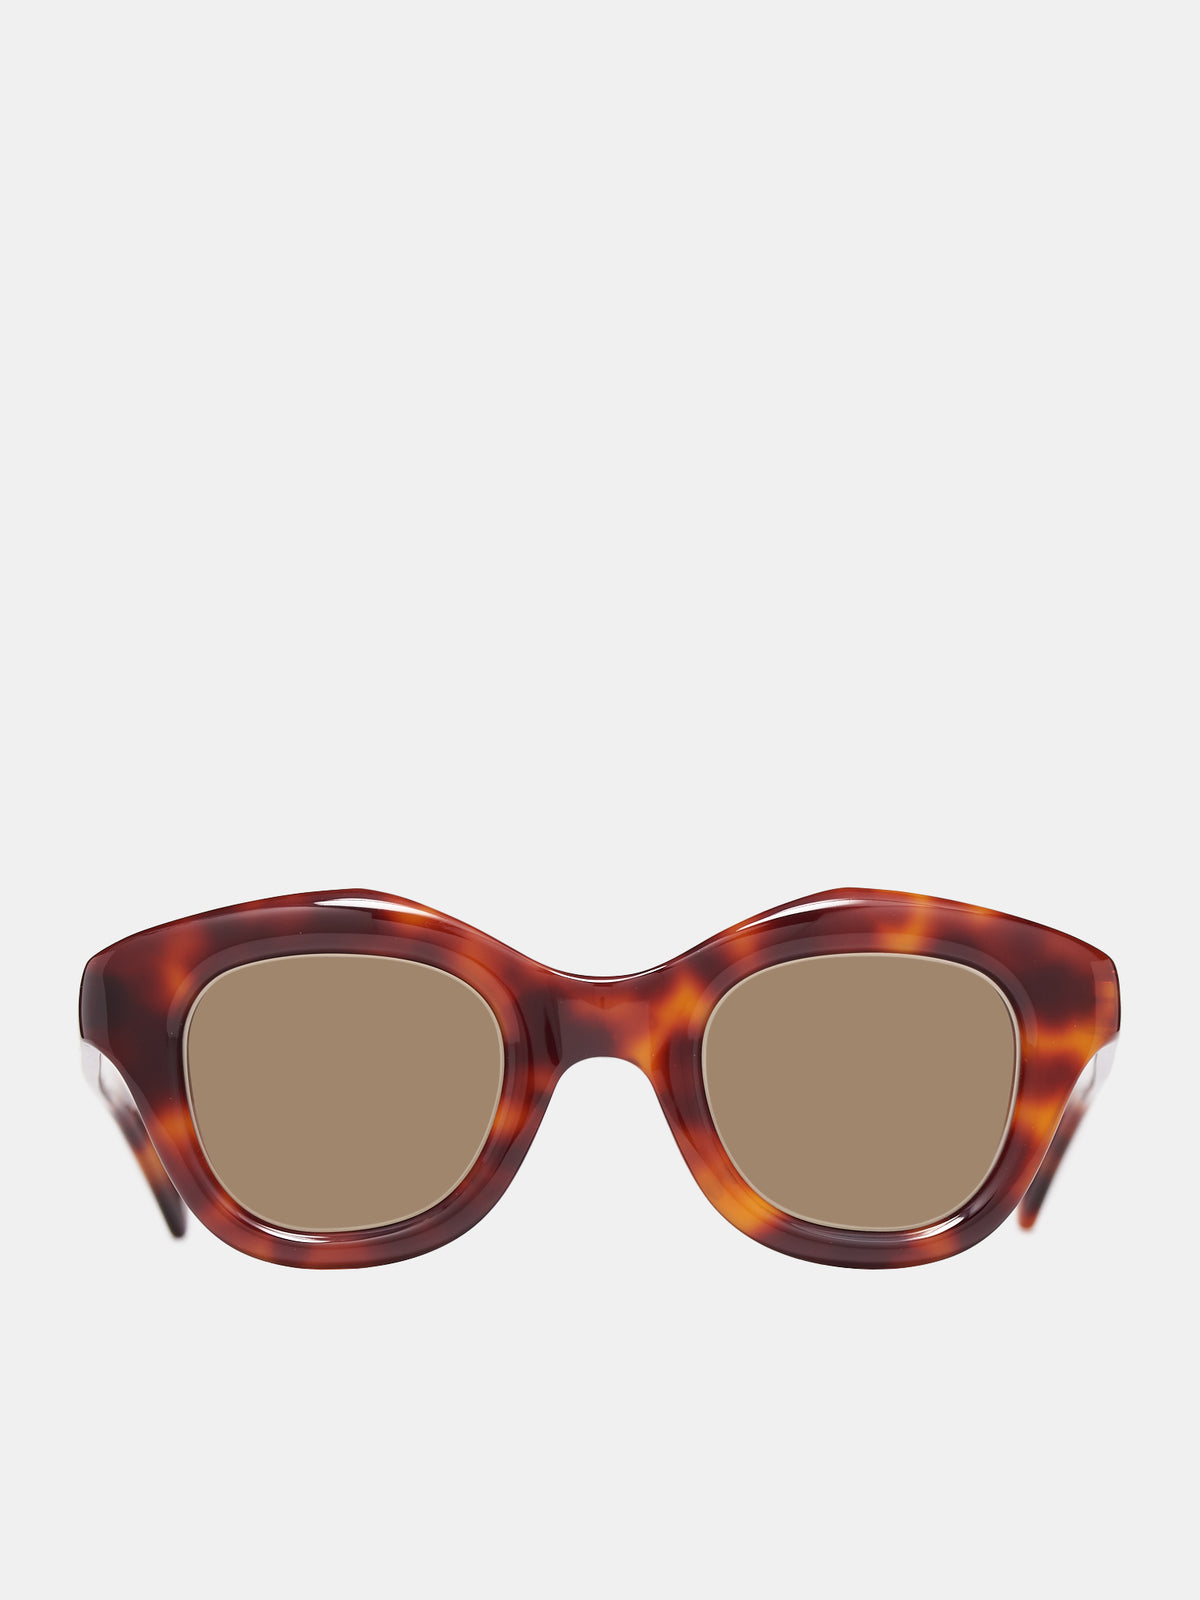 Hook Sunglasses (HOOK-ORANGE-TORTSHELL-BROWN4)